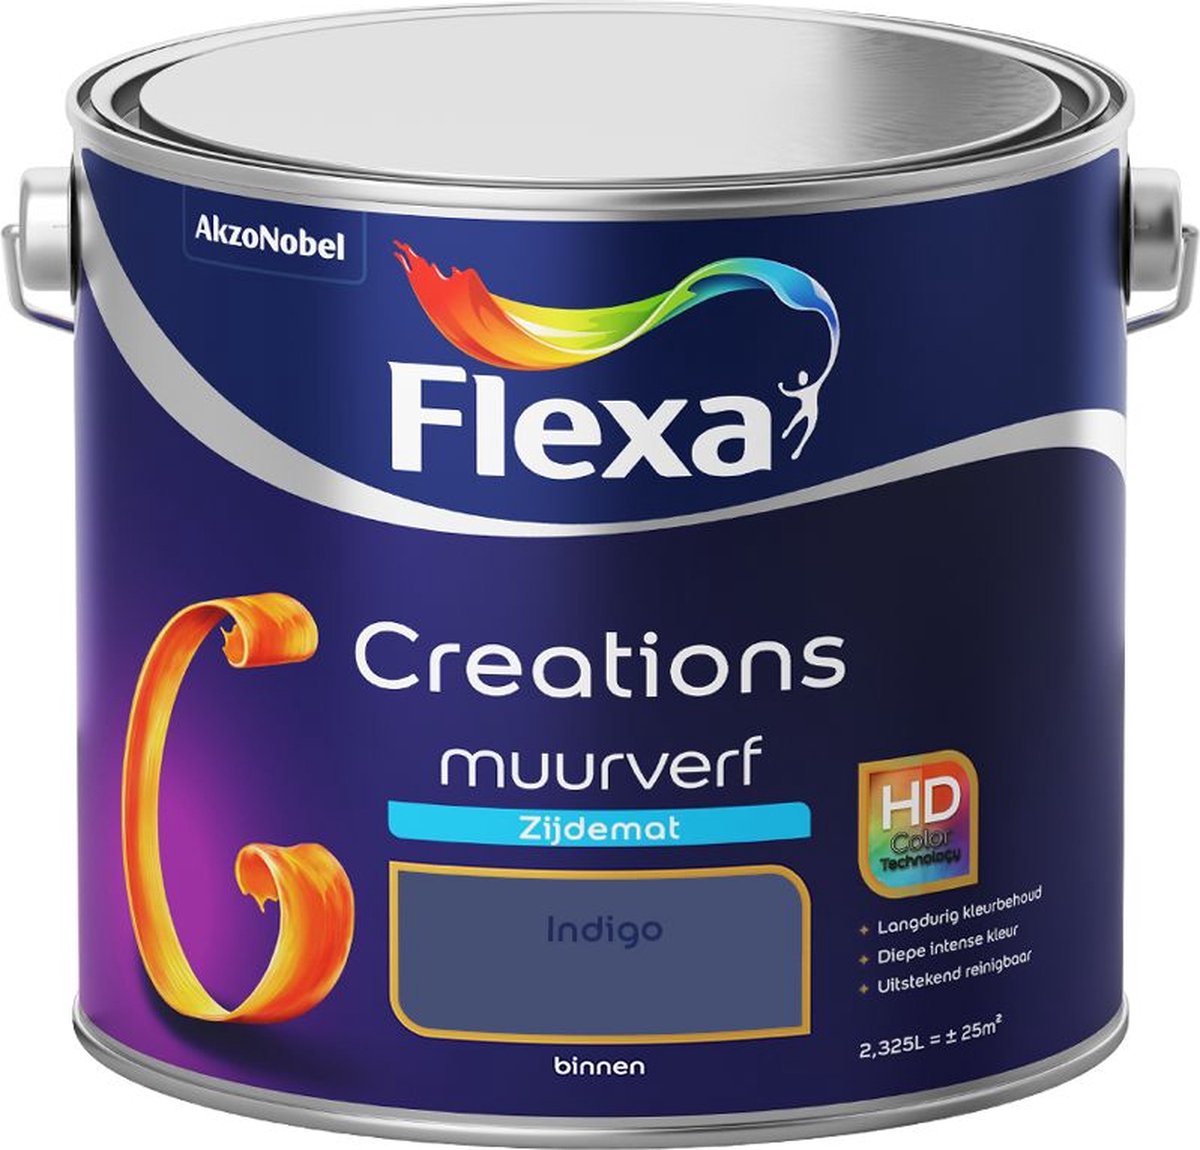 Flexa | Creations Muurverf Zijdemat | Indigo - Kleur van het jaar 2013 | 2.5L